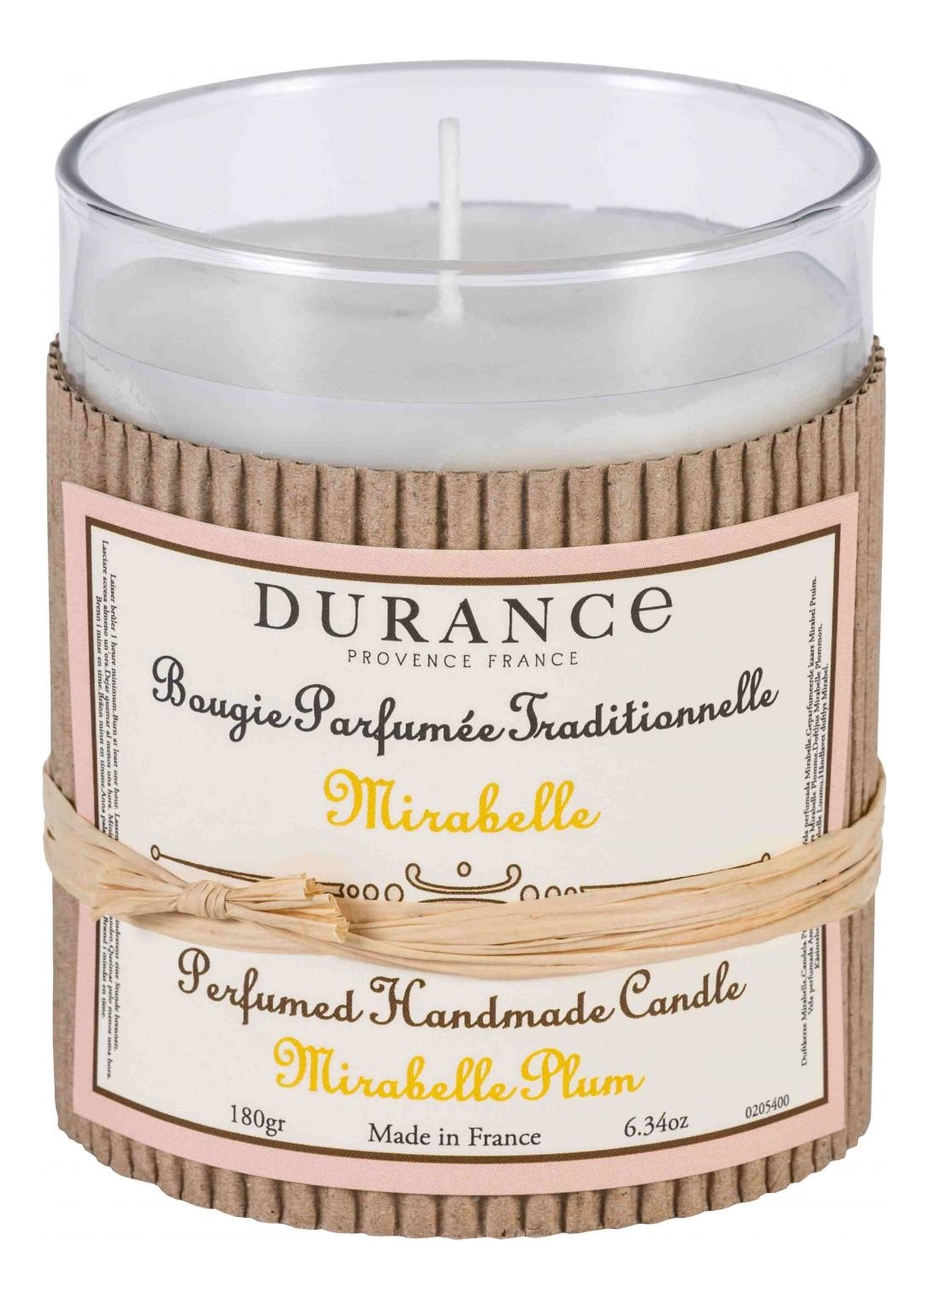 Ароматическая свеча Perfumed Handmade Candle Mirabelle Plum 180г ароматическая свеча perfumed handmade candle lavender 180г лаванда